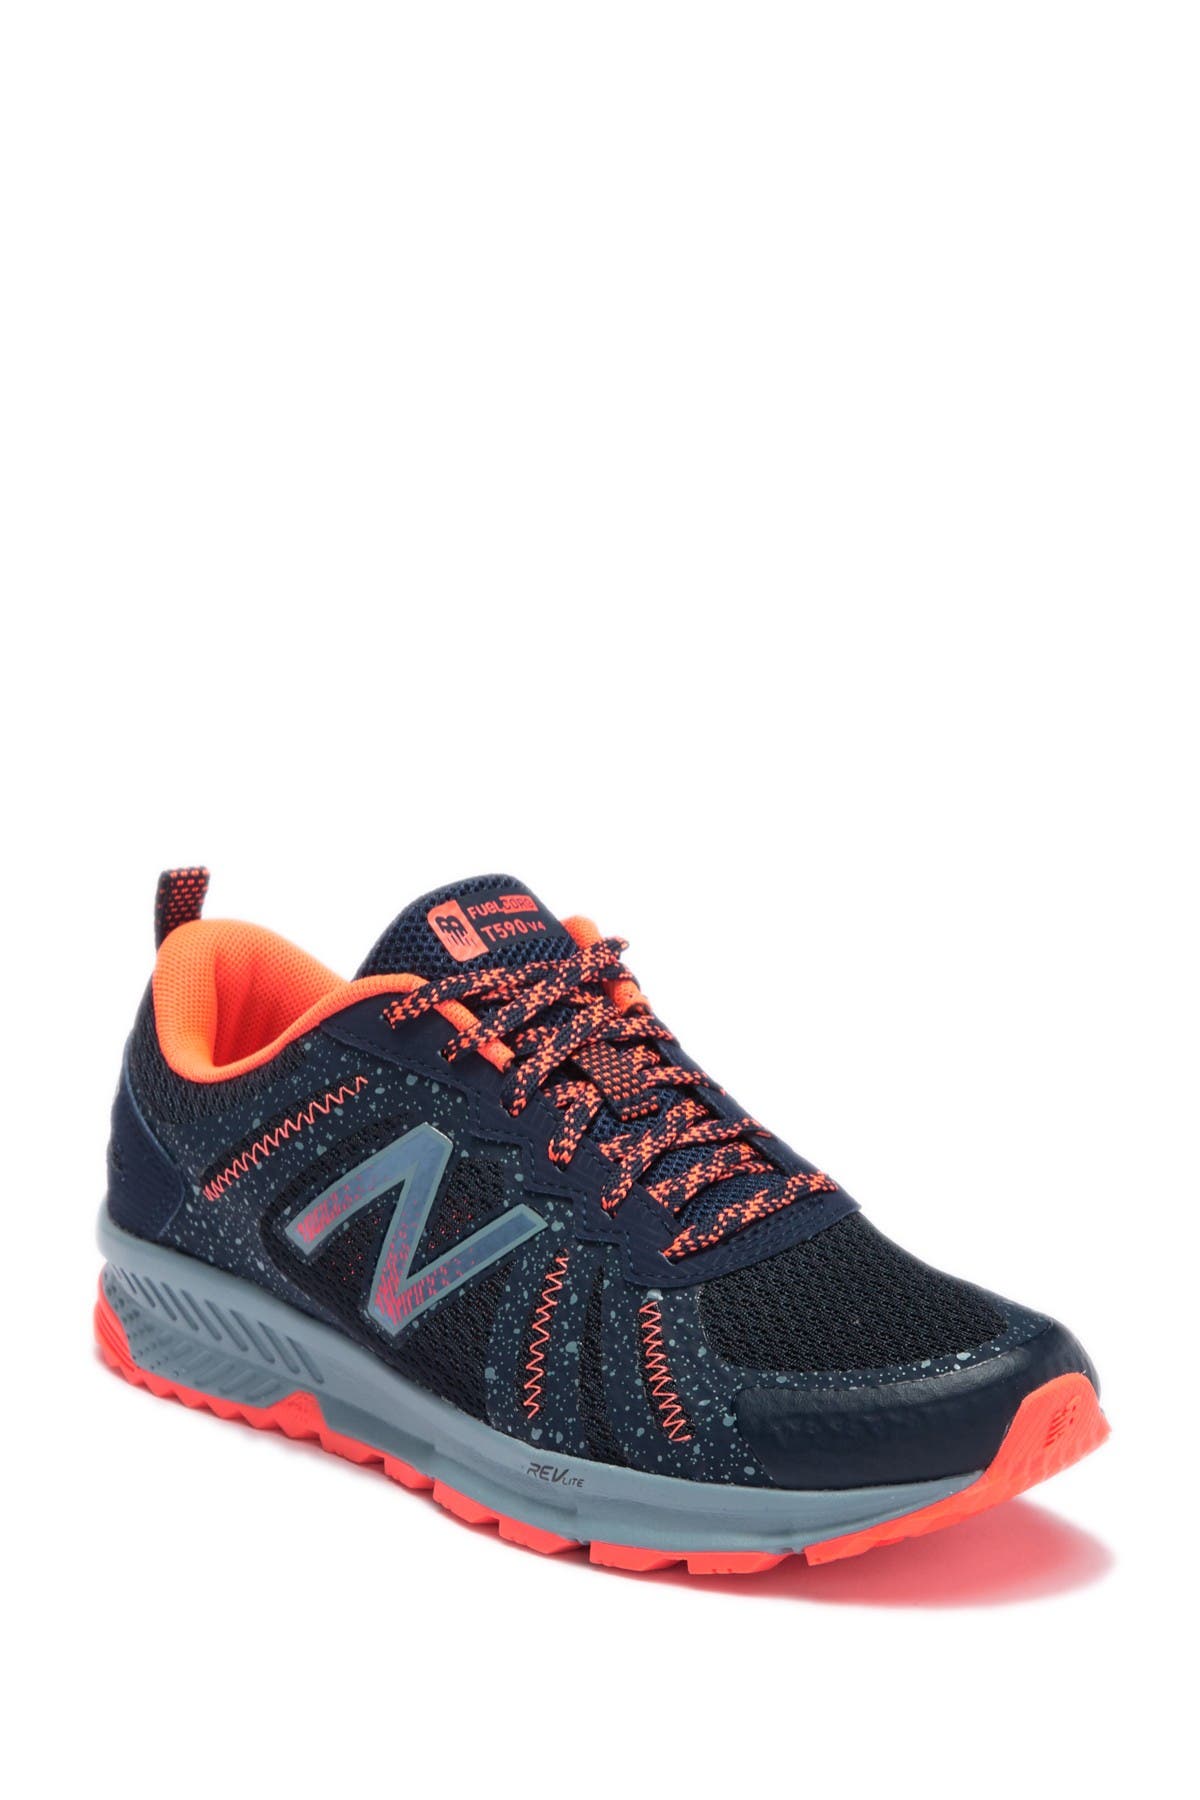 New Balance | T590 v4 Trail Running Shoe | Nordstrom Rack